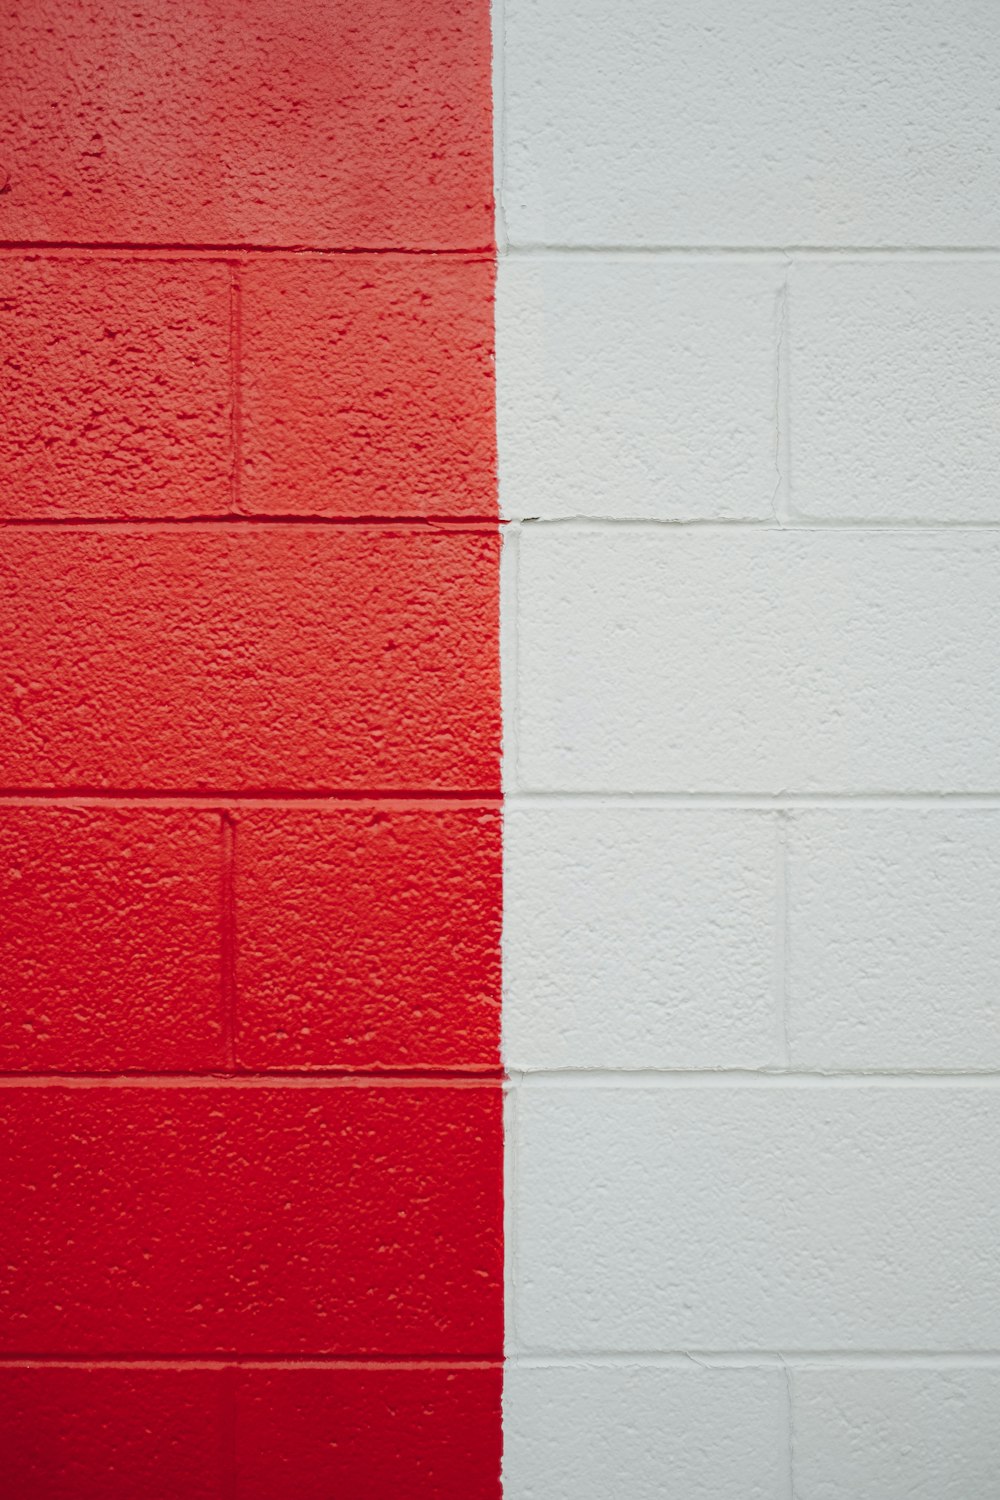 un mur rouge et blanc avec une bande rouge et blanche